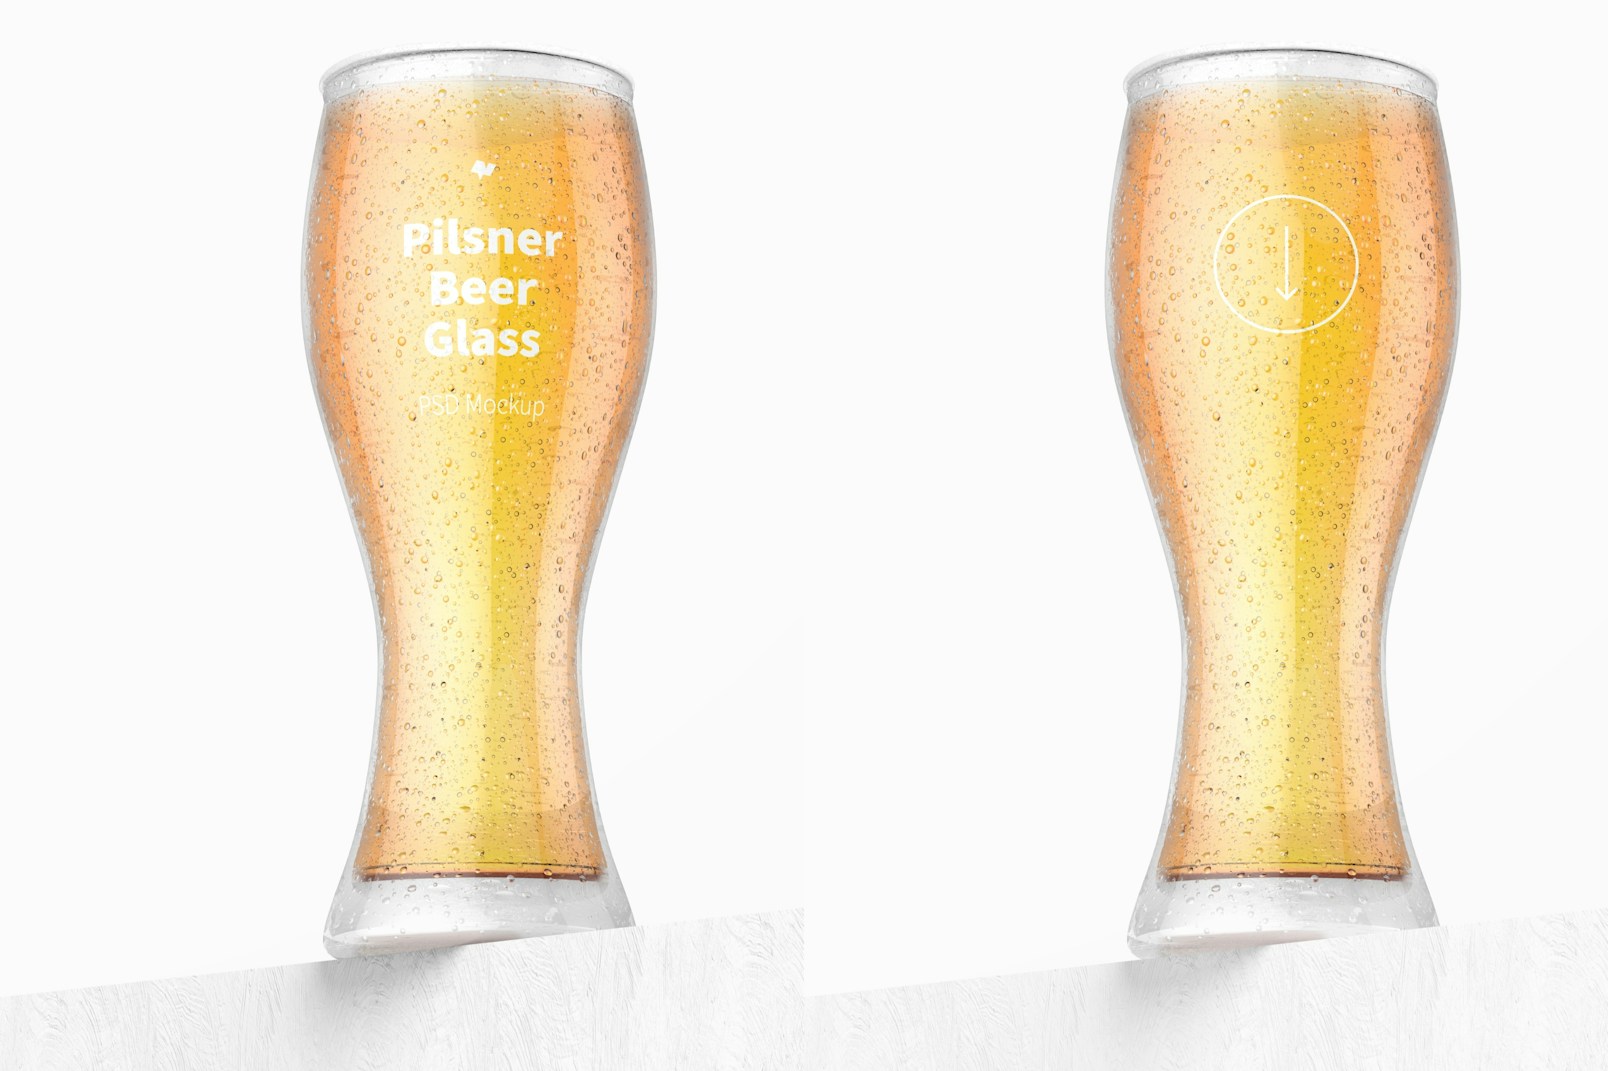 Pilsner Beer Glass Mockup, Low Angle View